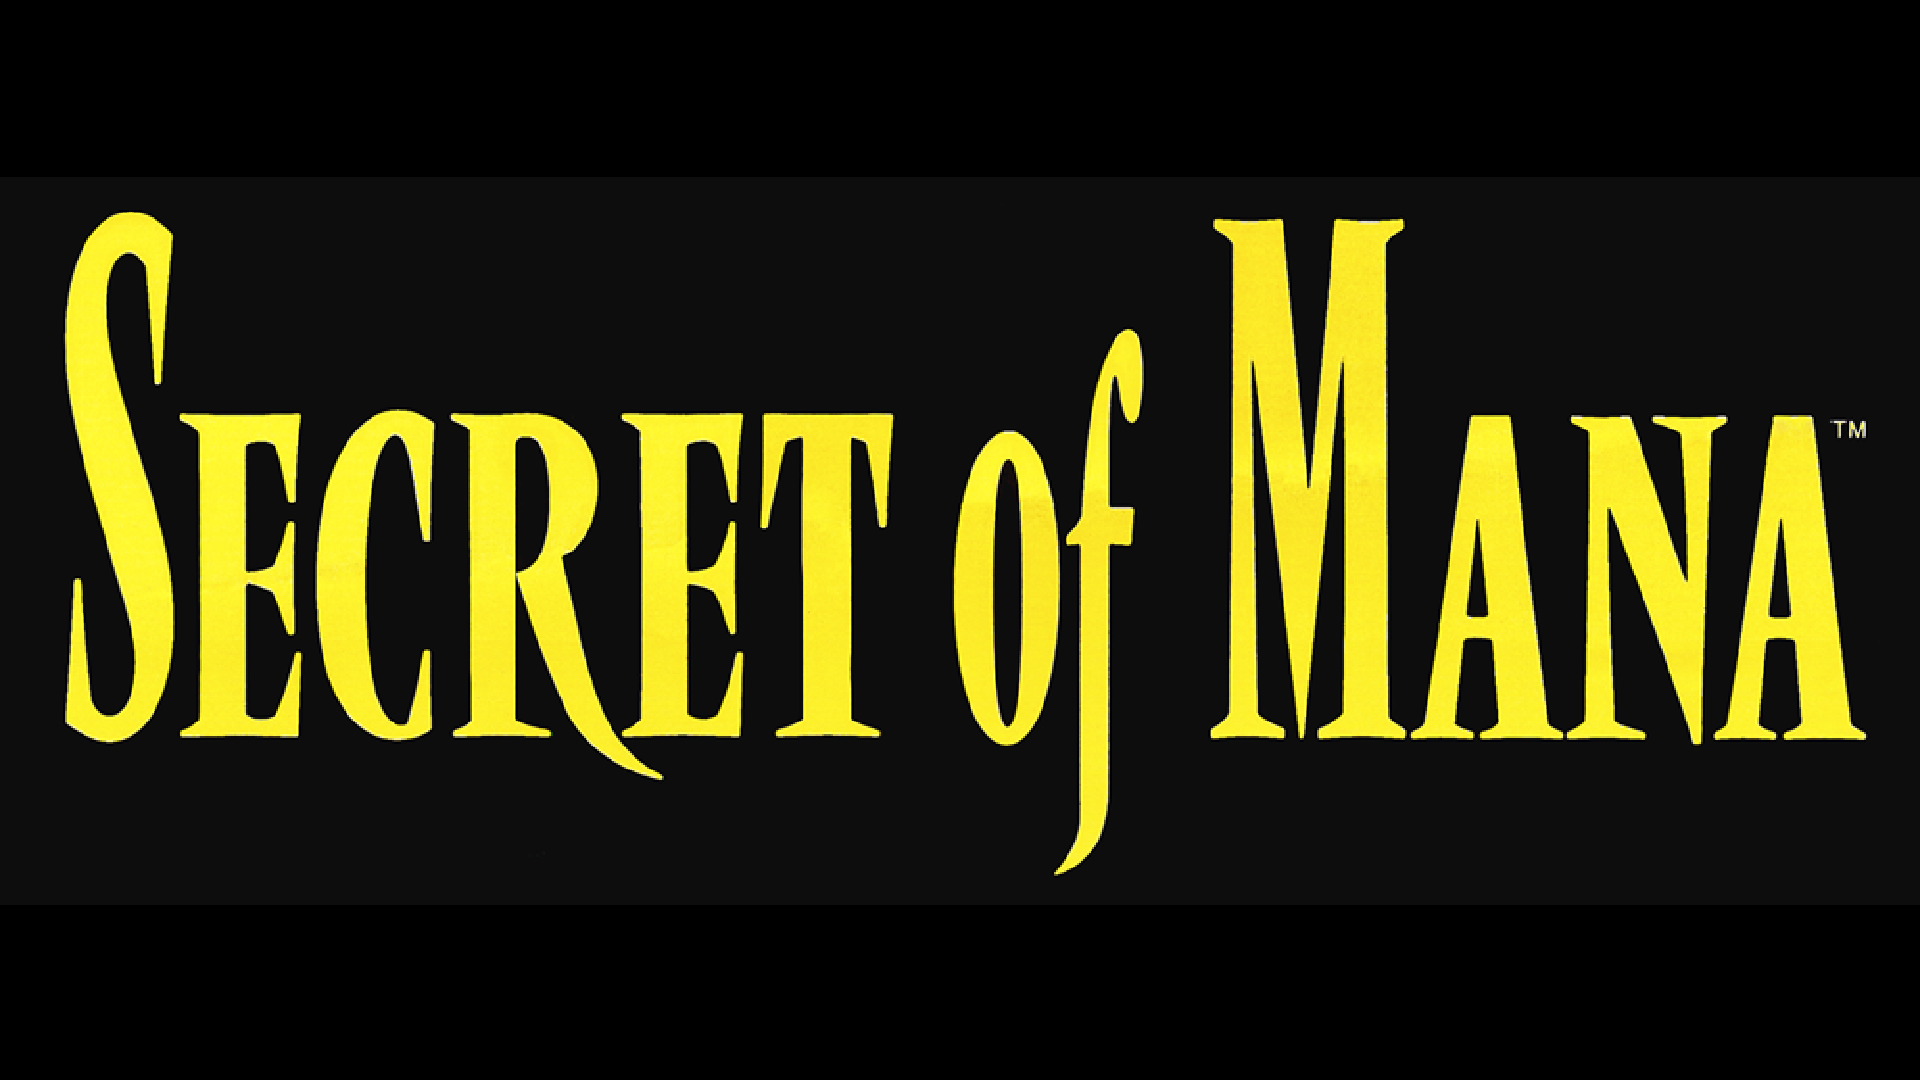 Secret of Mana Logo